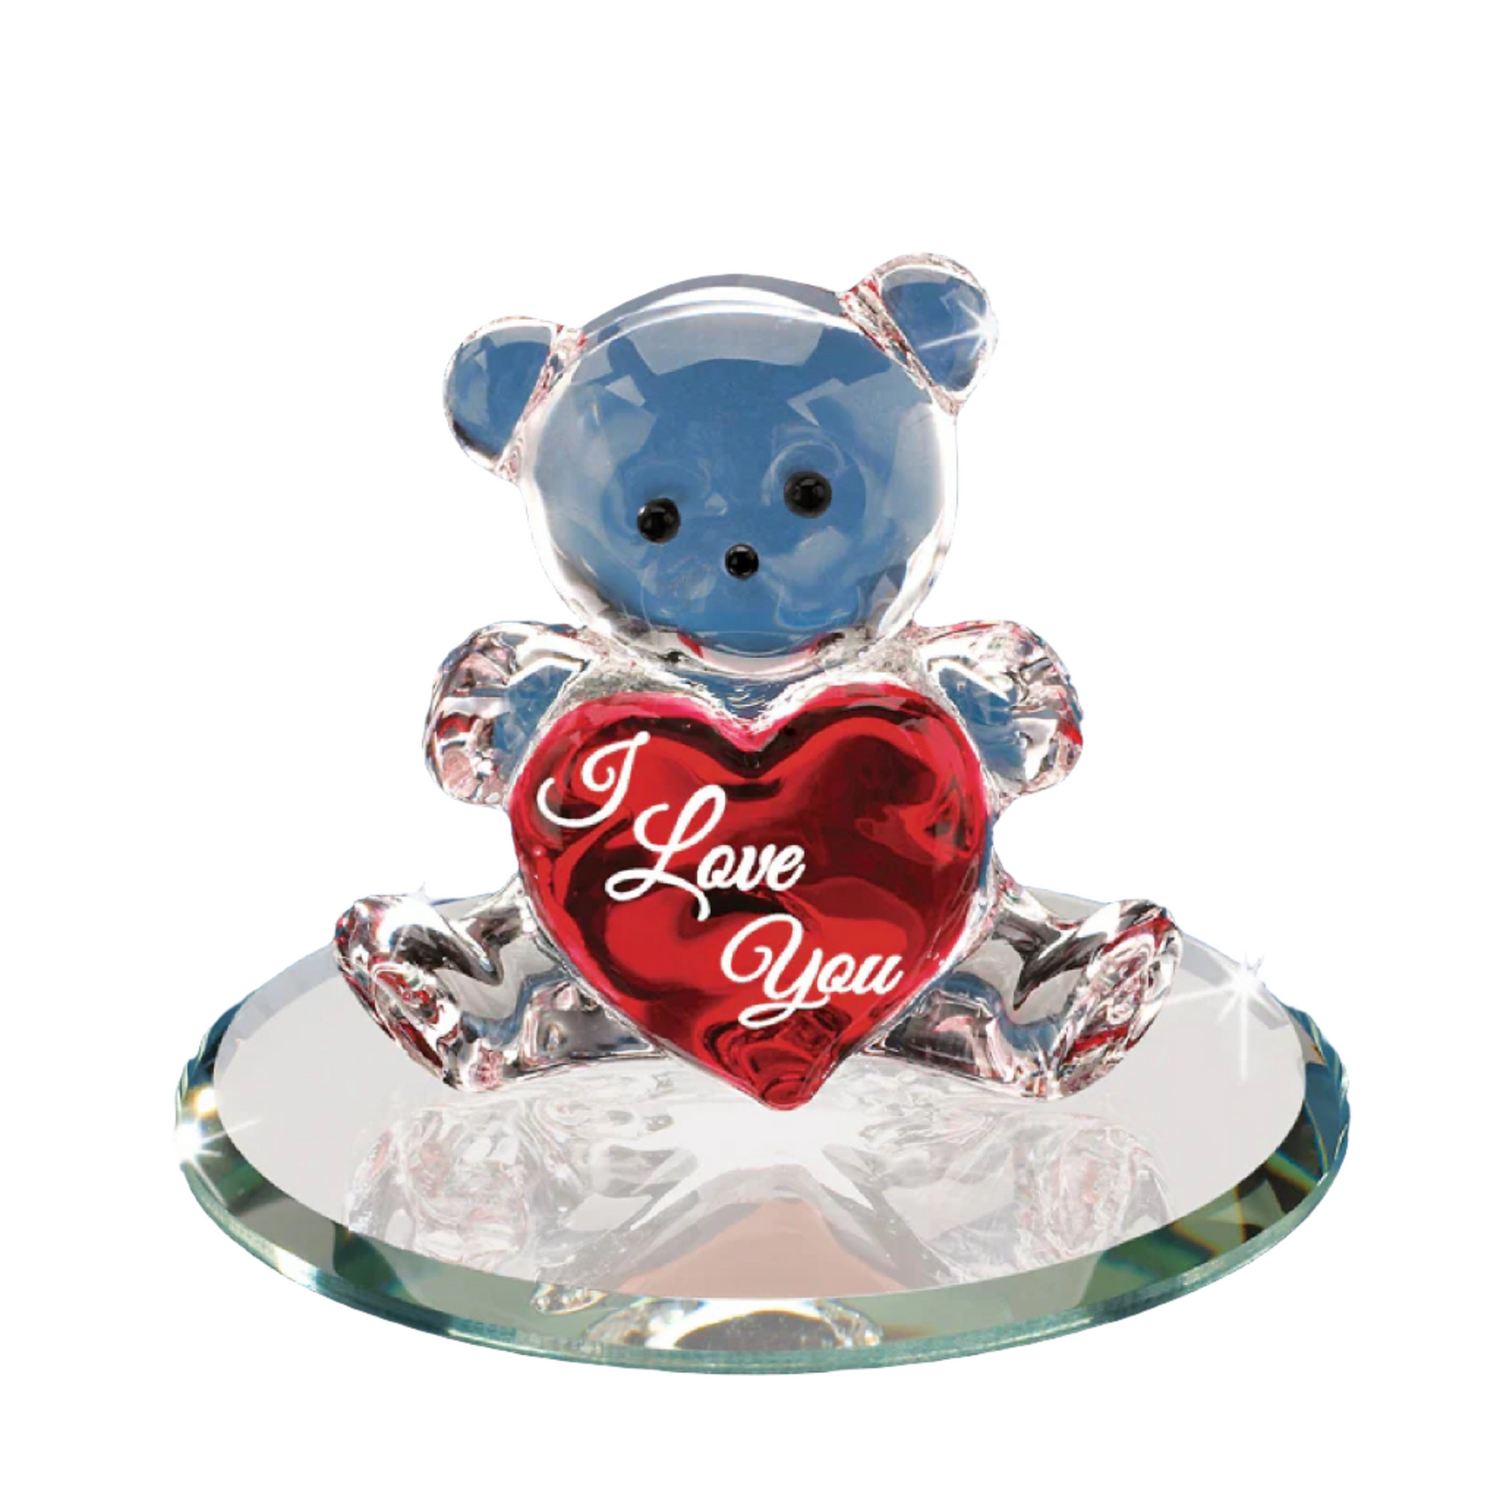 Glass Baron Bear "I Love You" Bear with Heart Figure